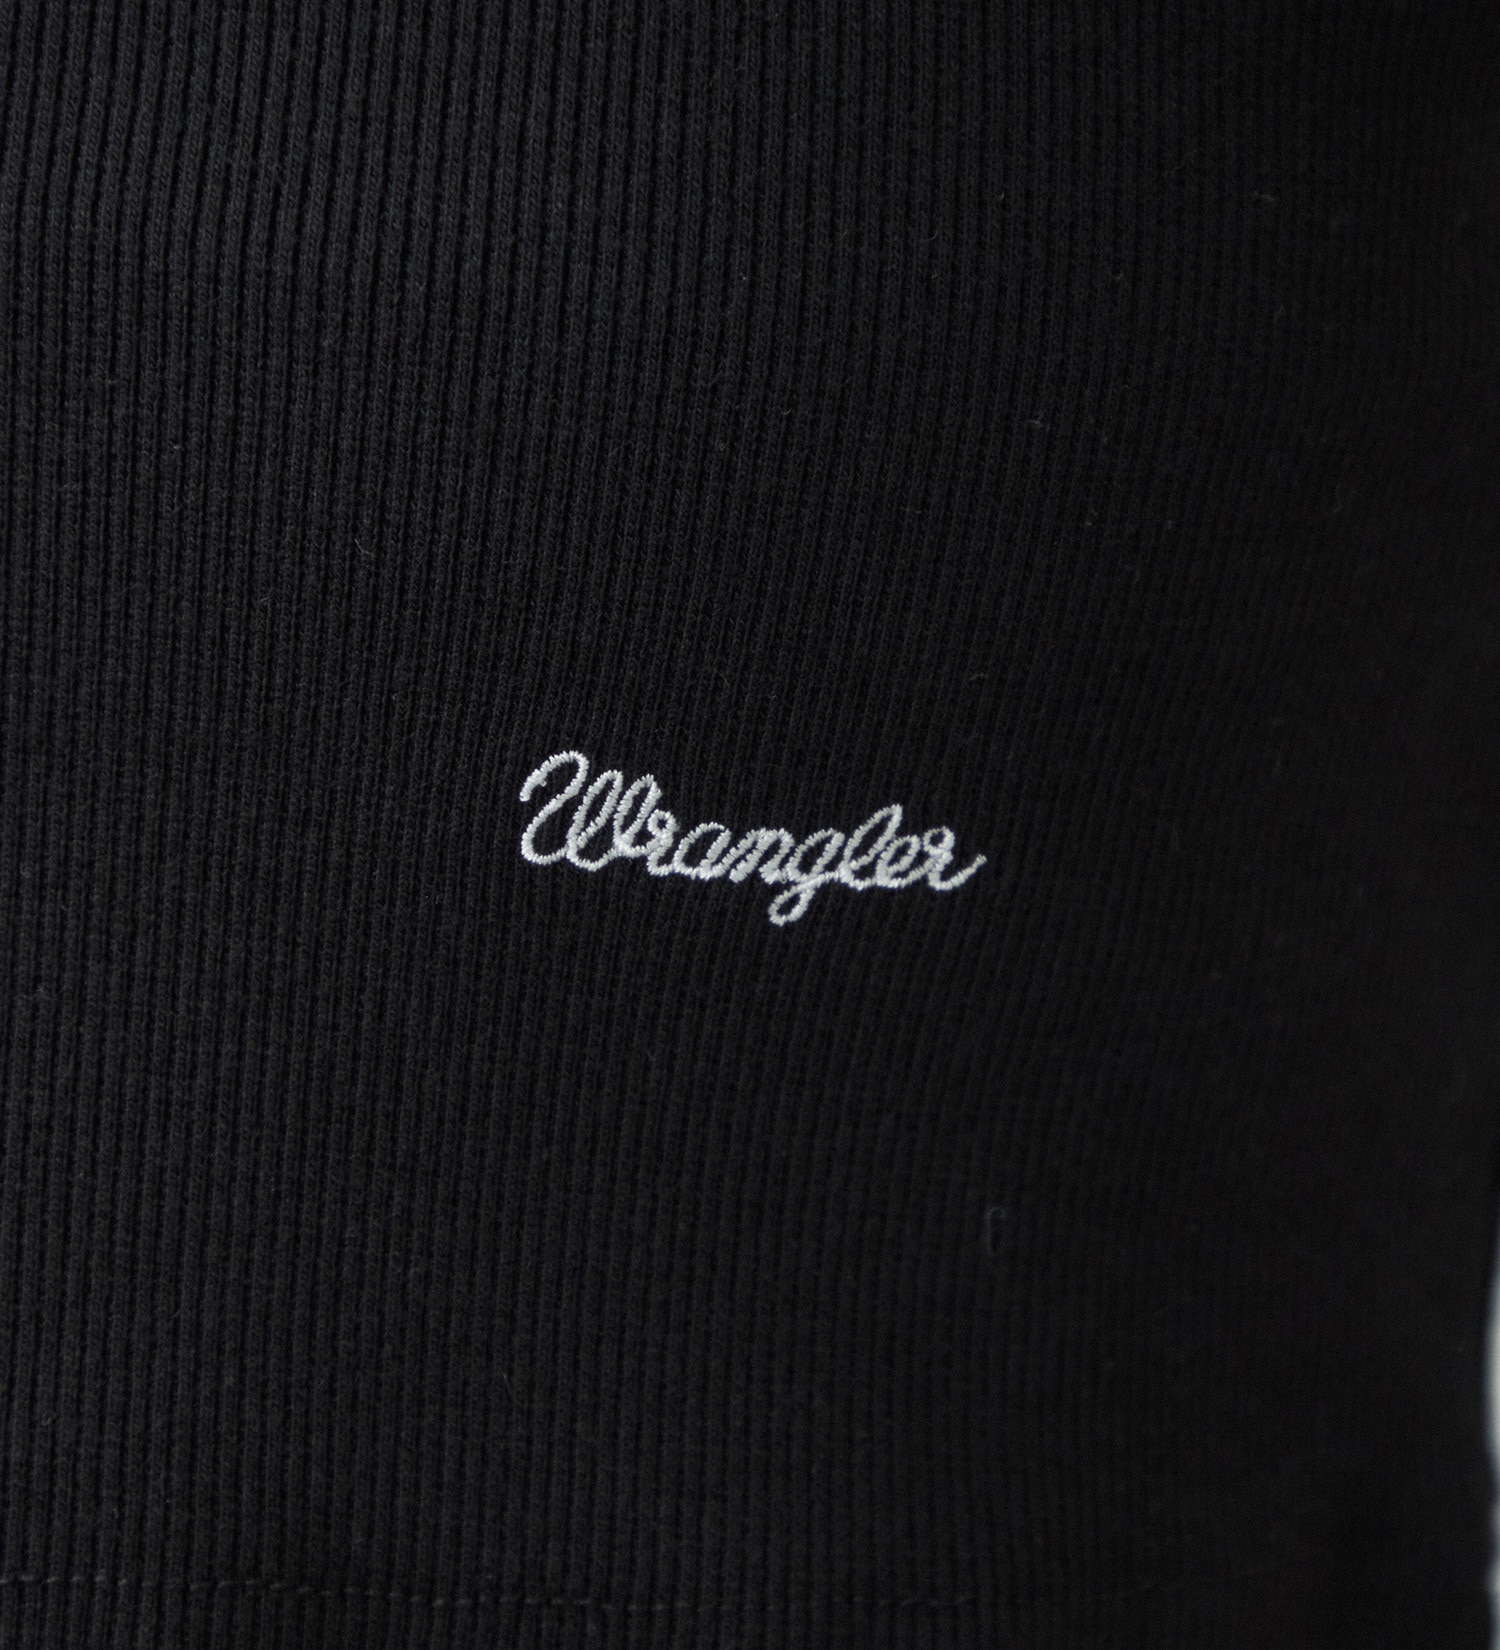 Wrangler(ラングラー)のクロップドリブタンクトップTee|トップス/タンクトップ/レディース|ブラック